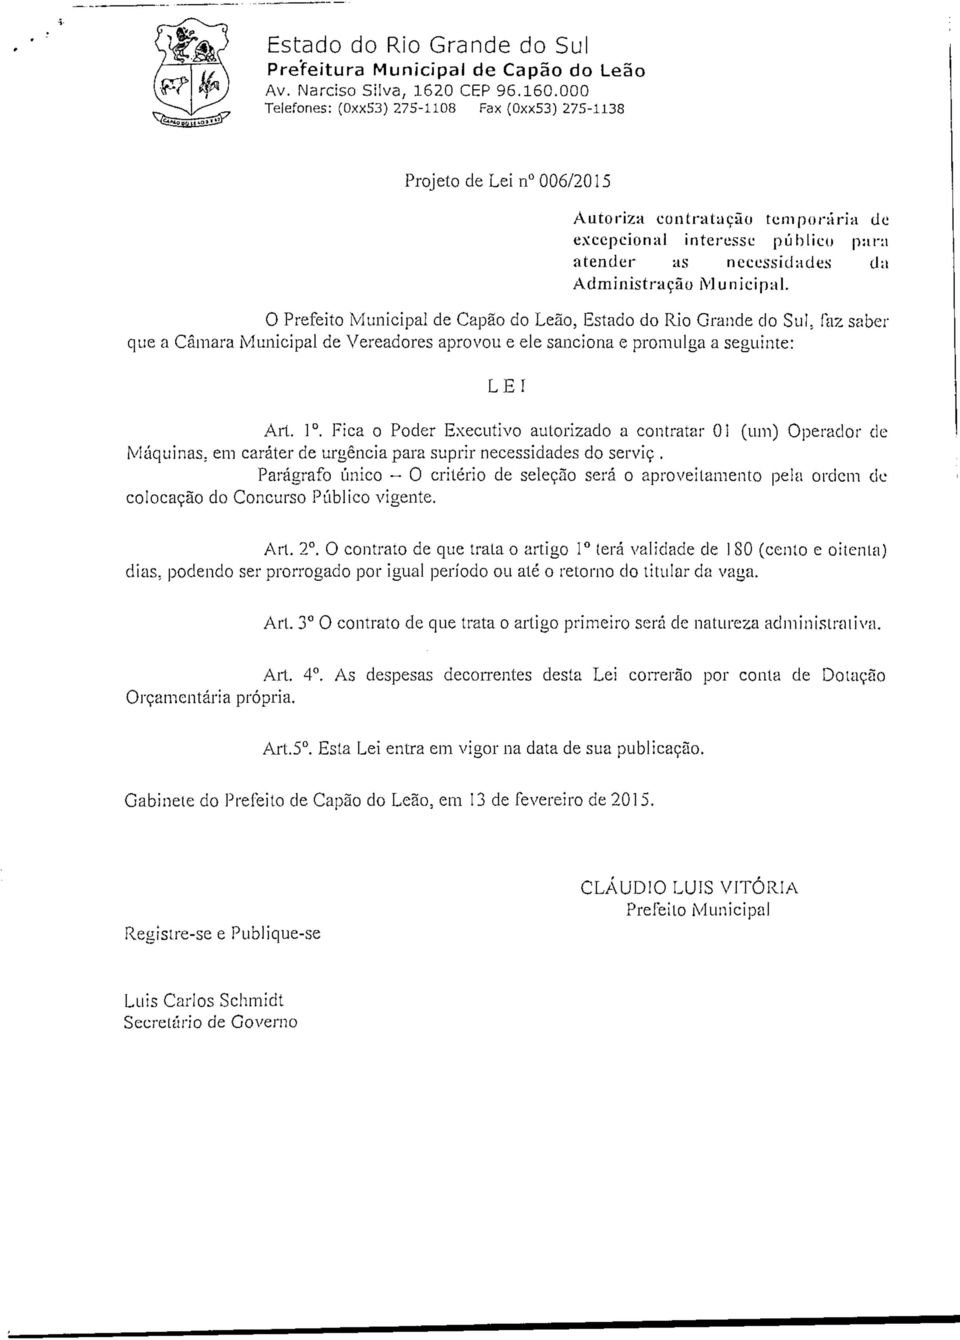 O Prefeito Municipal de Capão do Leão, Estado do Rio Grande do Sul. faz saber que a Câmara Municipal de Vereadores aprovou e ele sanciona e promulga a seguinte: LEI Art. 1.